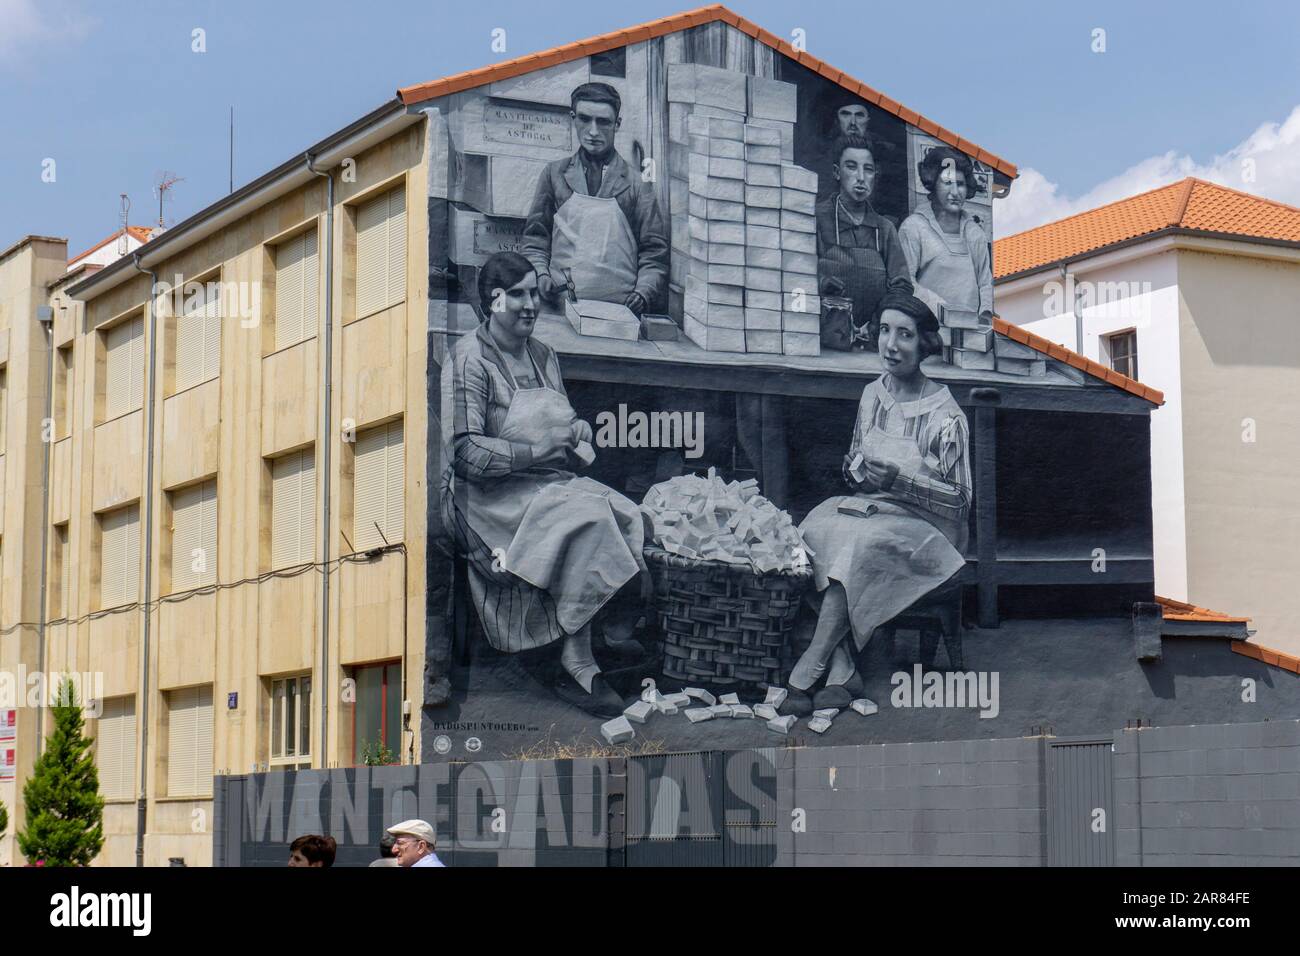 Großes Wandbild in Schwarzweiß, das Männer und Frauen darstellt, die in einem Geschäft an der Seite eines Gebäudes in Astorga in Galicien, Spanien, arbeiten Stockfoto